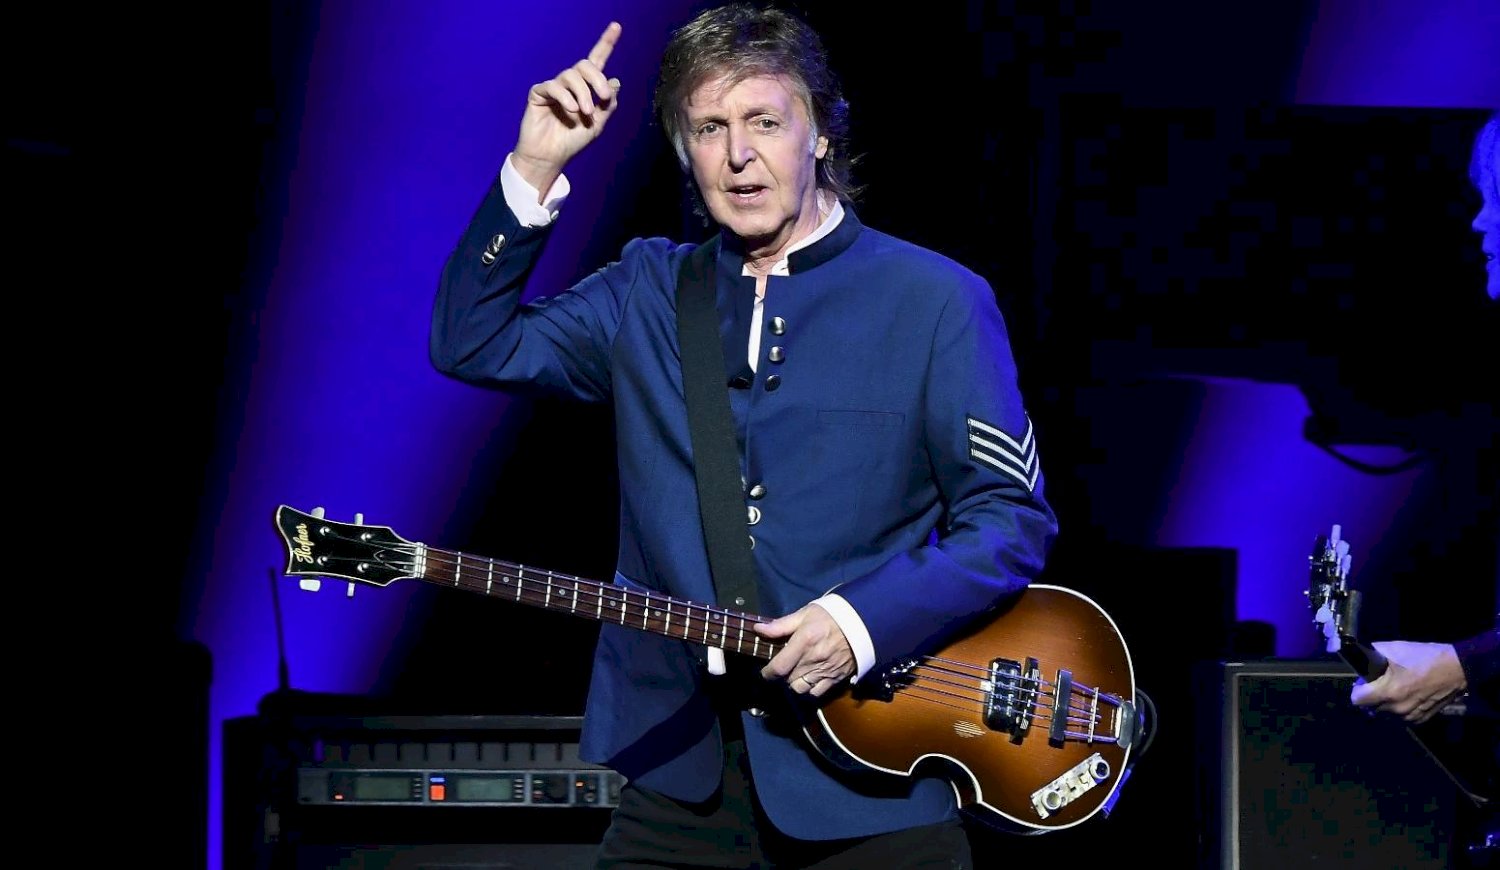 Paul McCartney se convirtió en el primer músico multimillonario del Reino Unido.